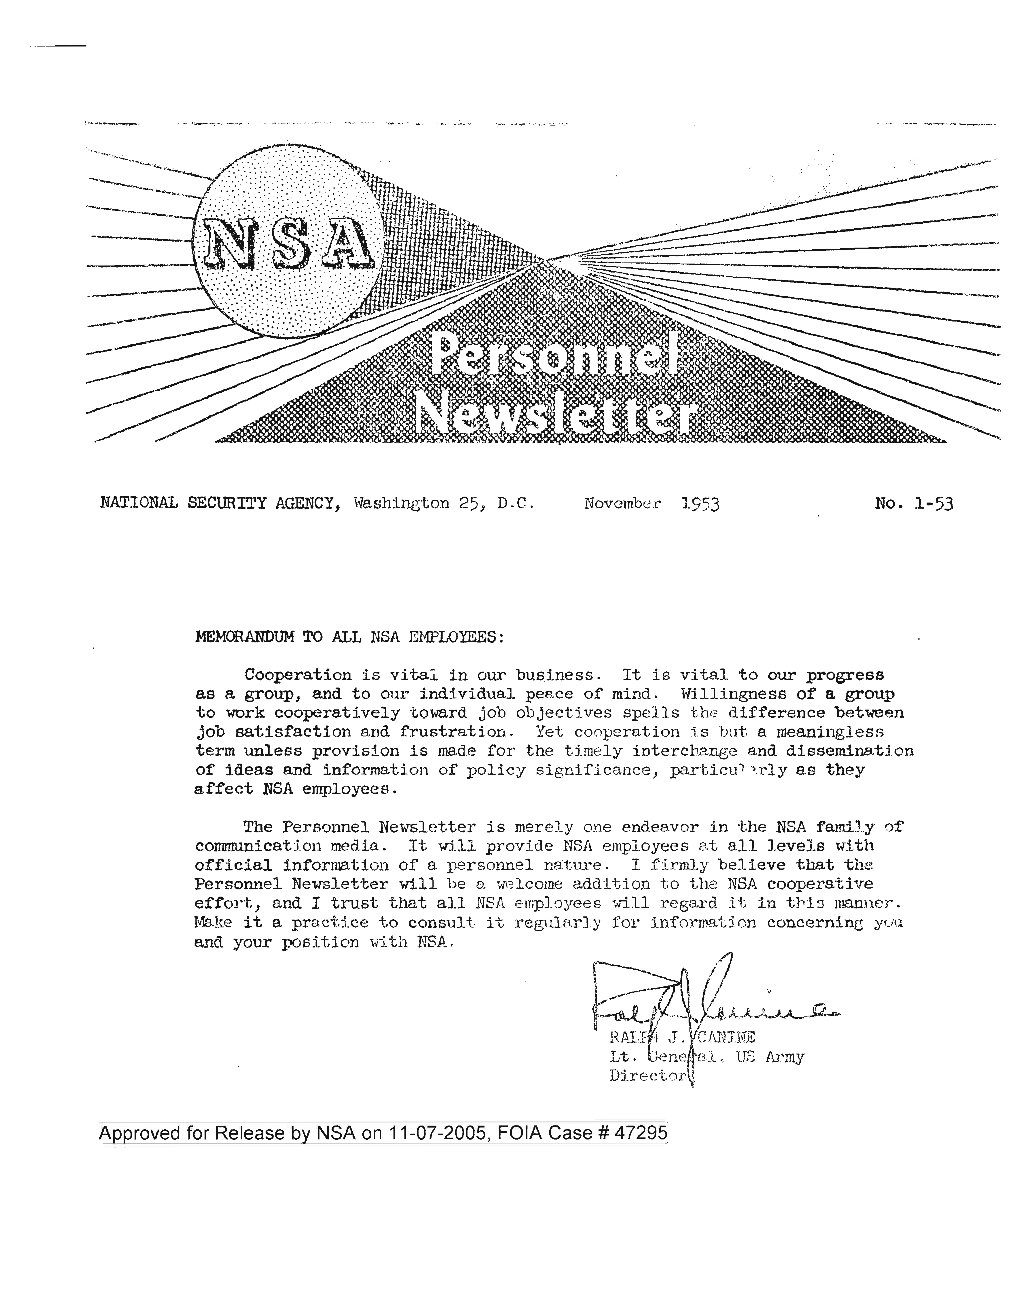 NSA Newsletter, November 1953